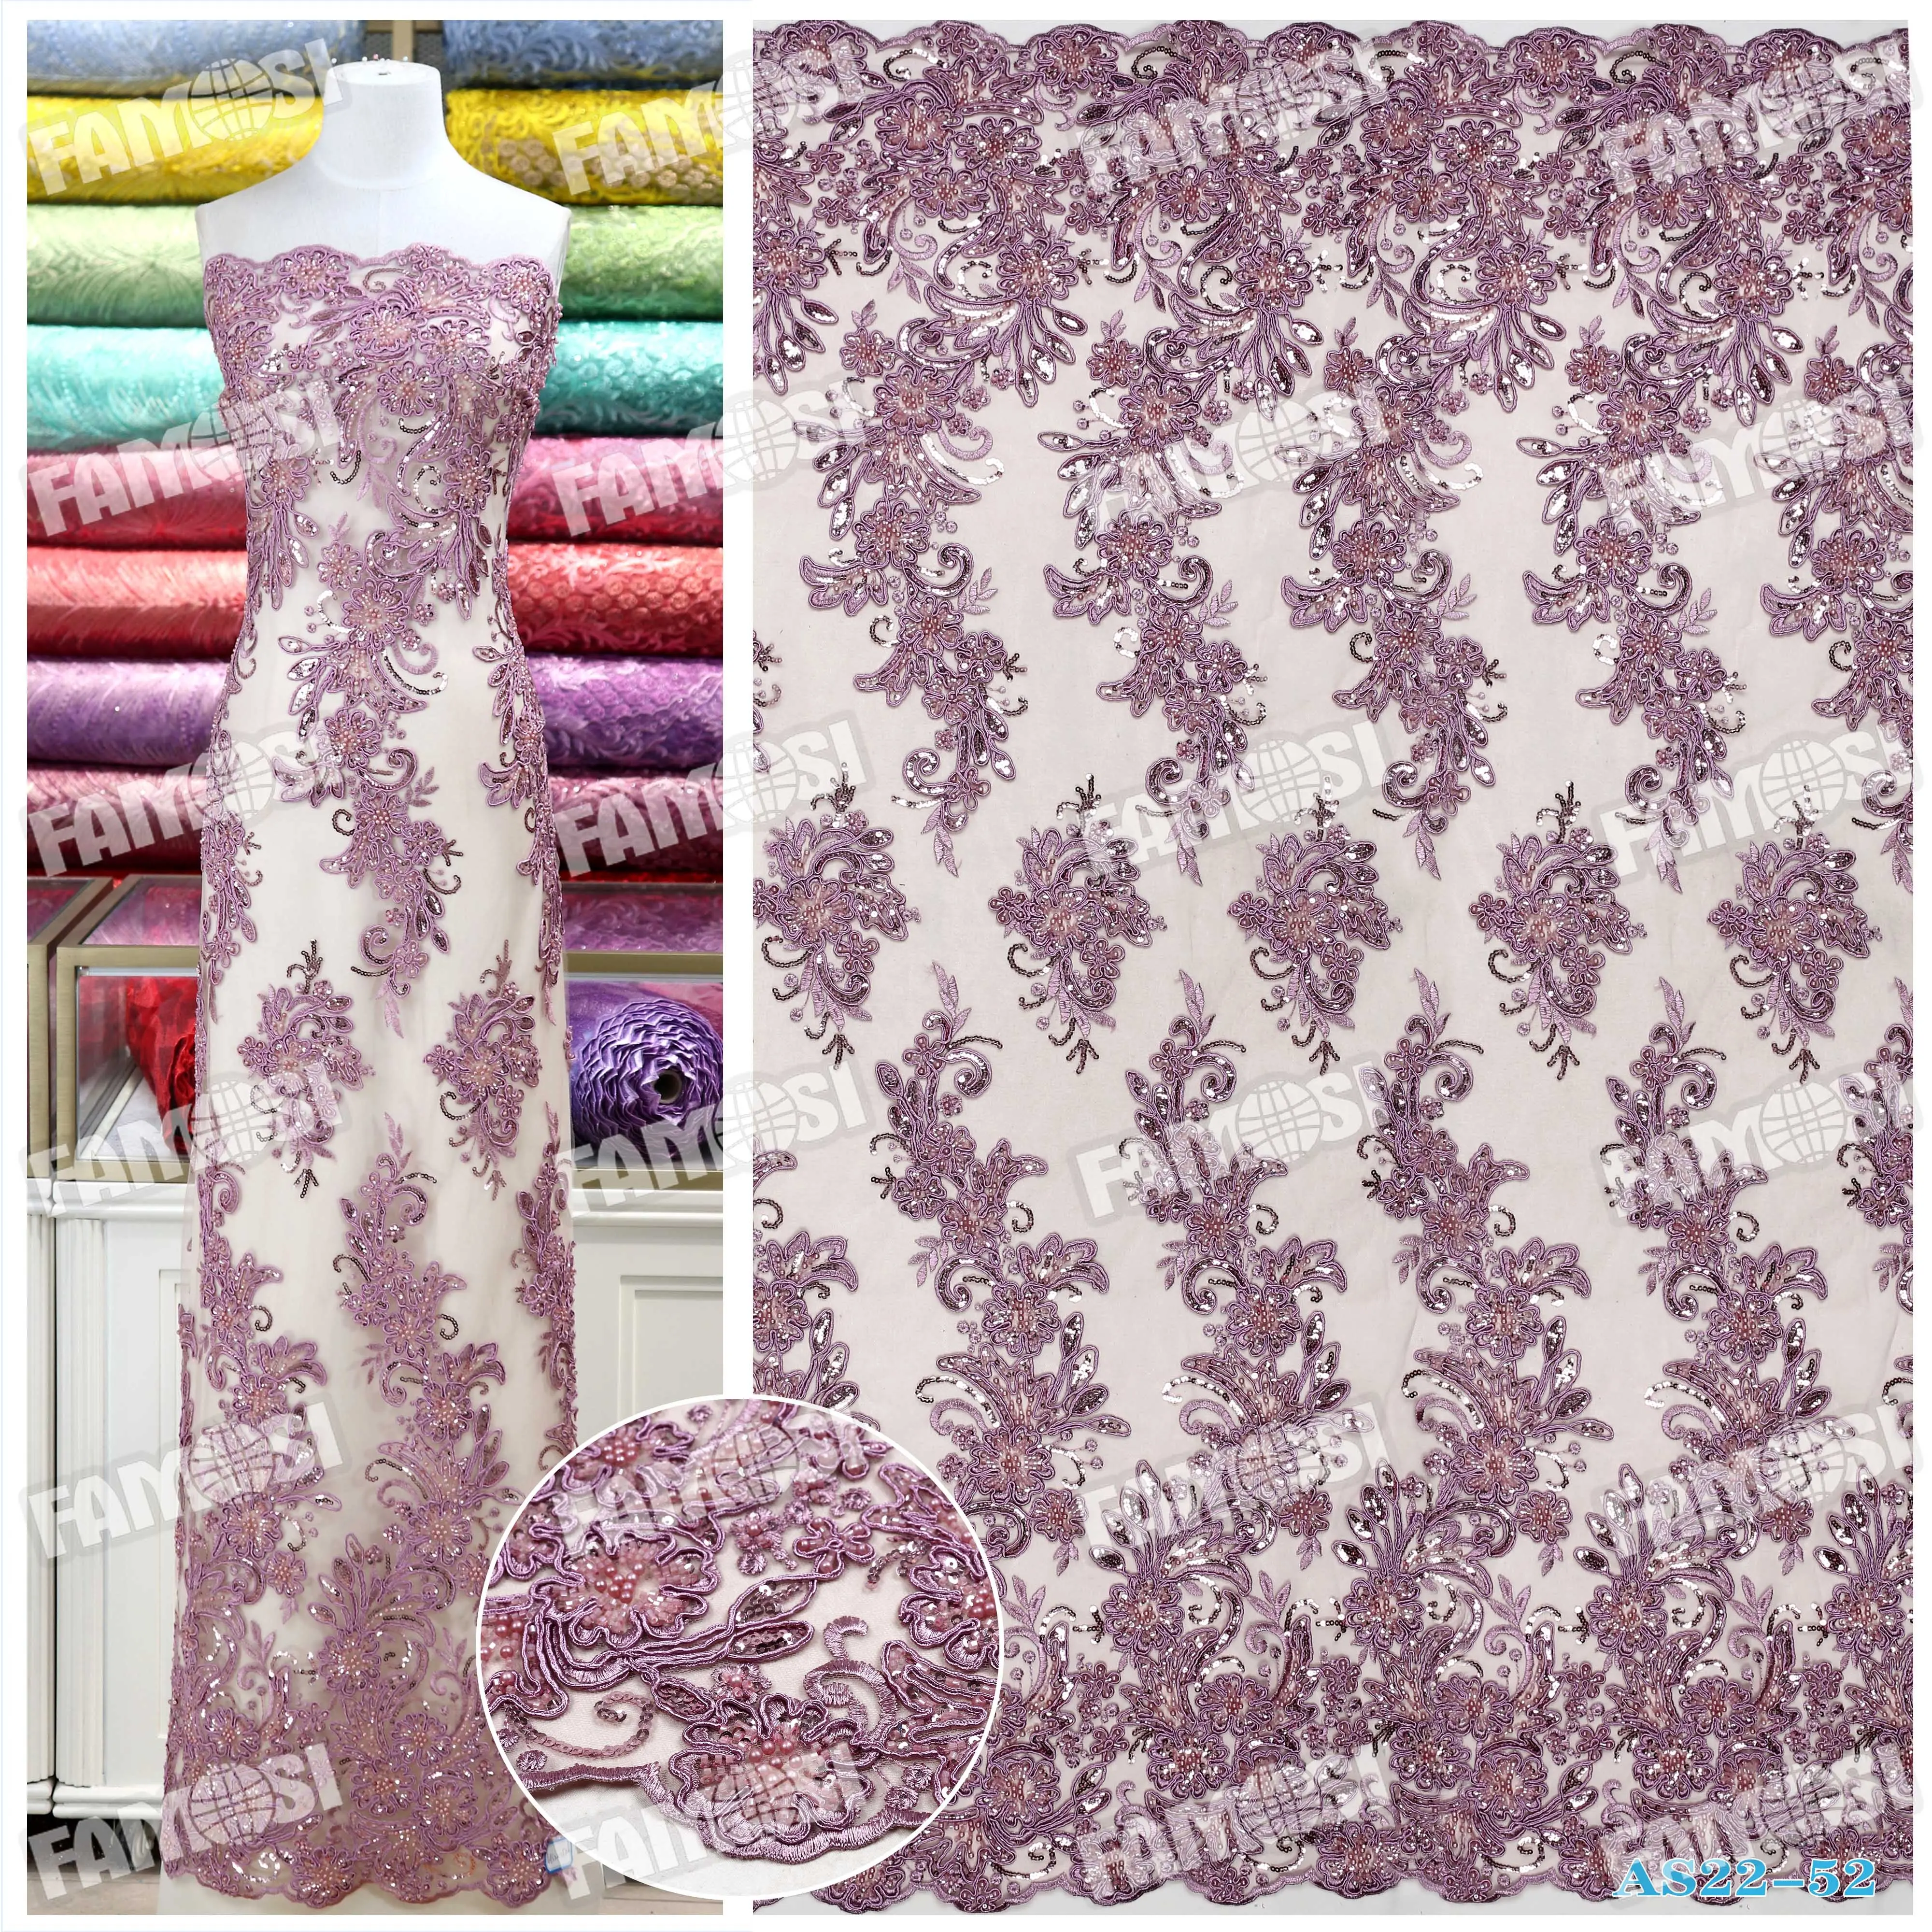 공장 가격 고귀한 신부 꽃 자수 기계 페르시 신부 니트 Tulle 레이스 패브릭 웨딩 드레스